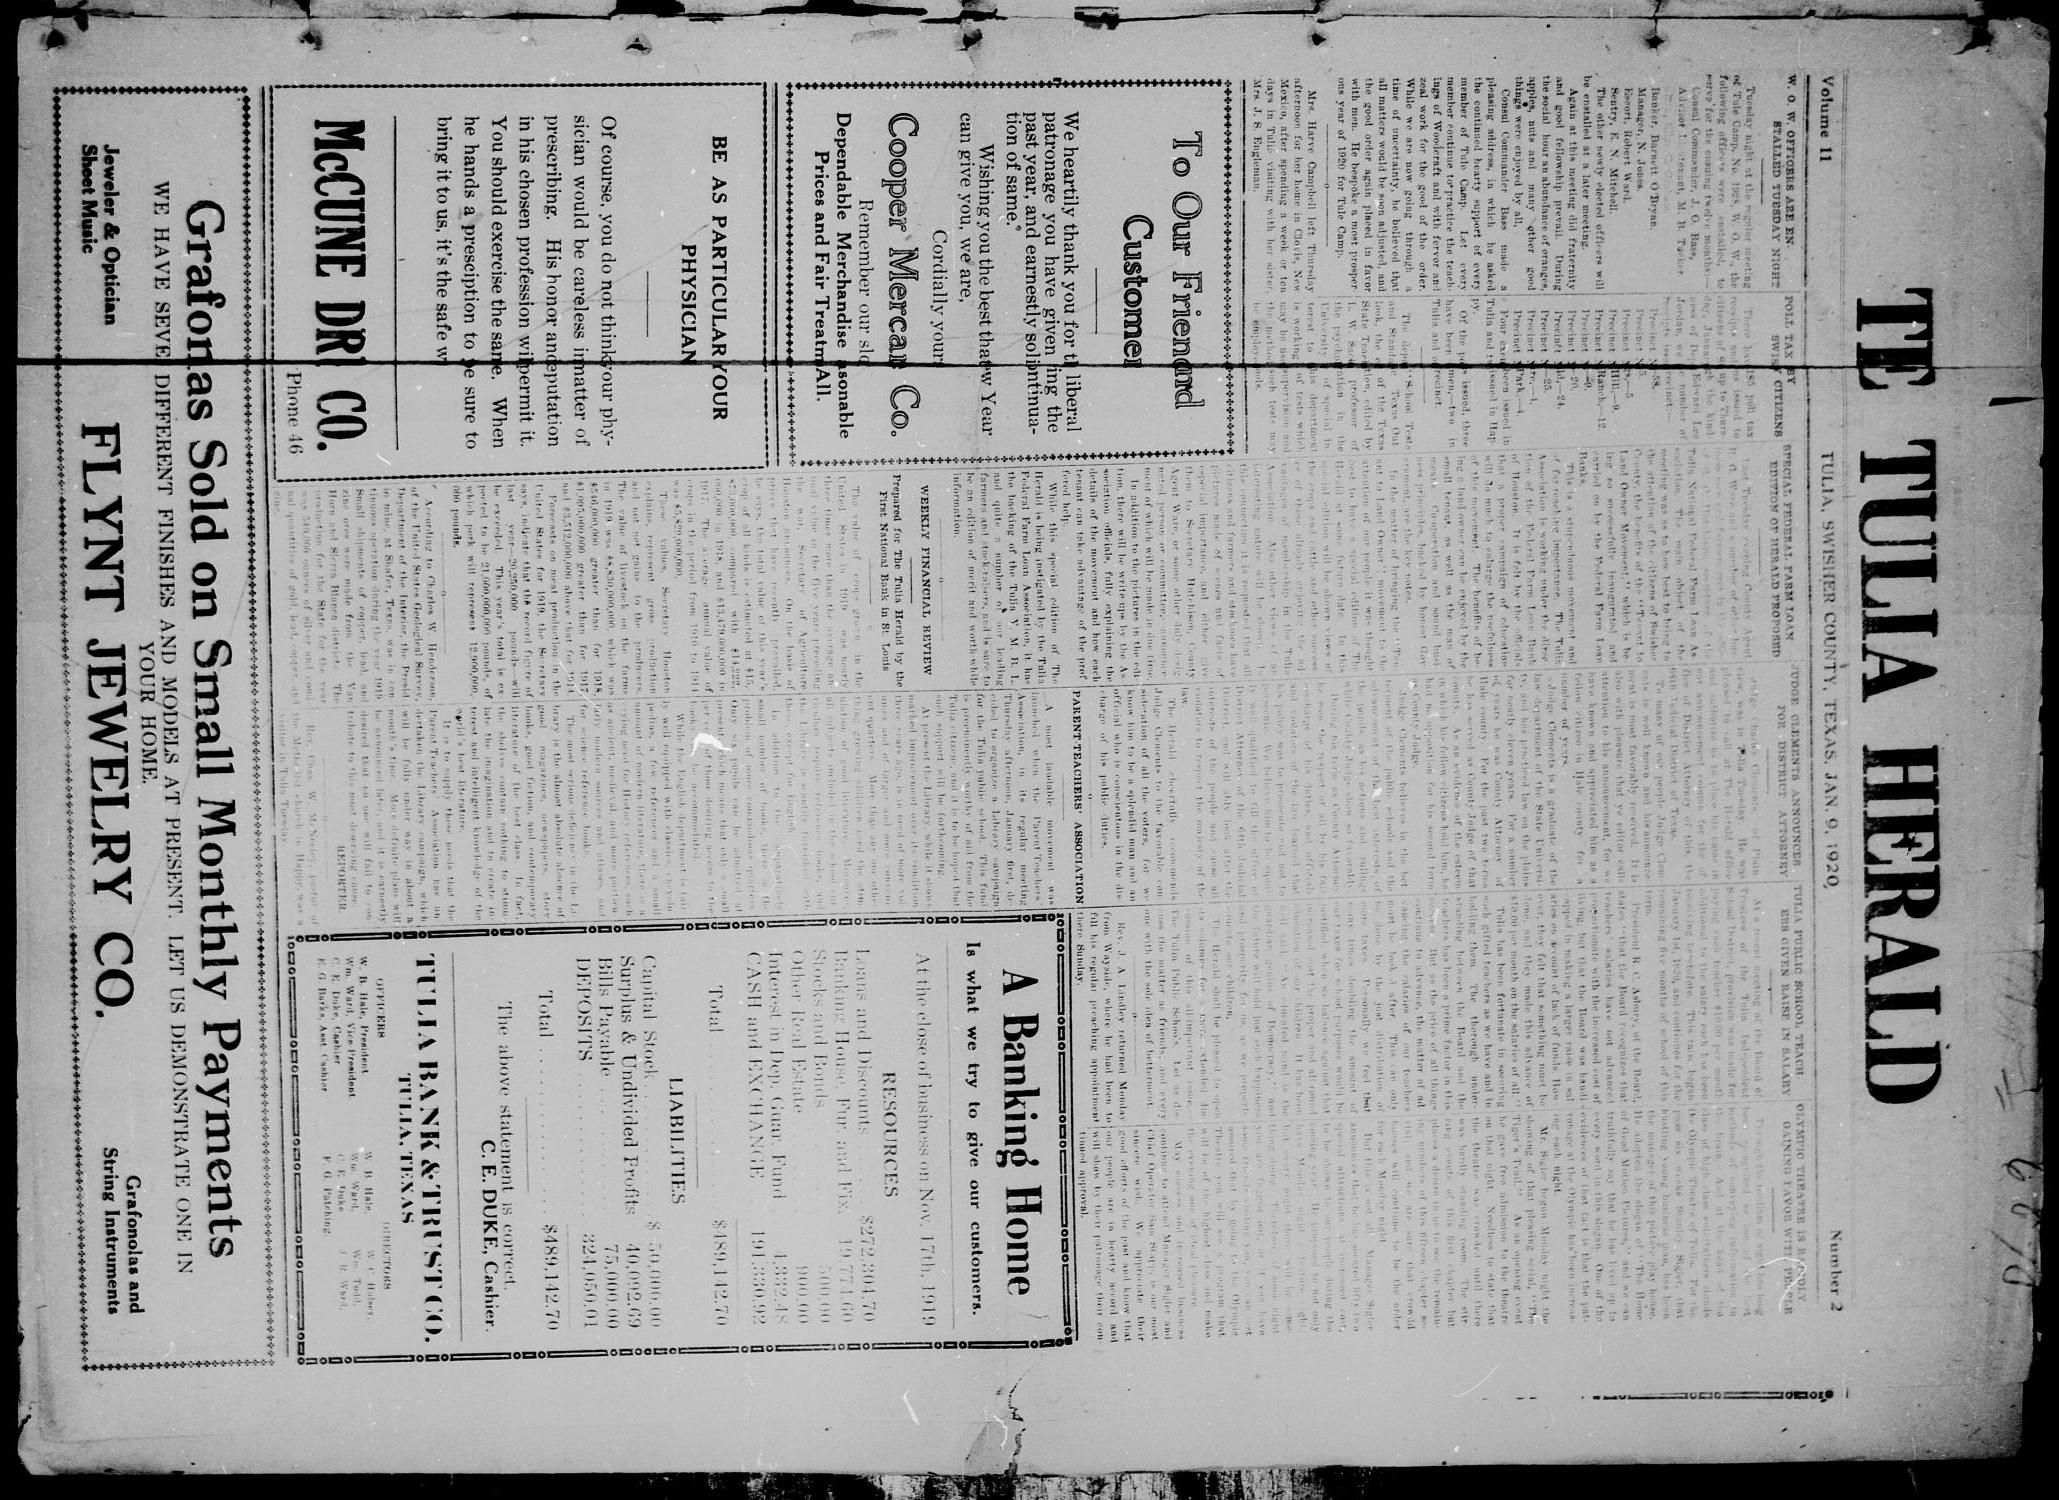 The Tulia Herald (Tulia, Tex), Vol. 11, No. 2, Ed. 1, Friday, January 9, 1920
                                                
                                                    1
                                                